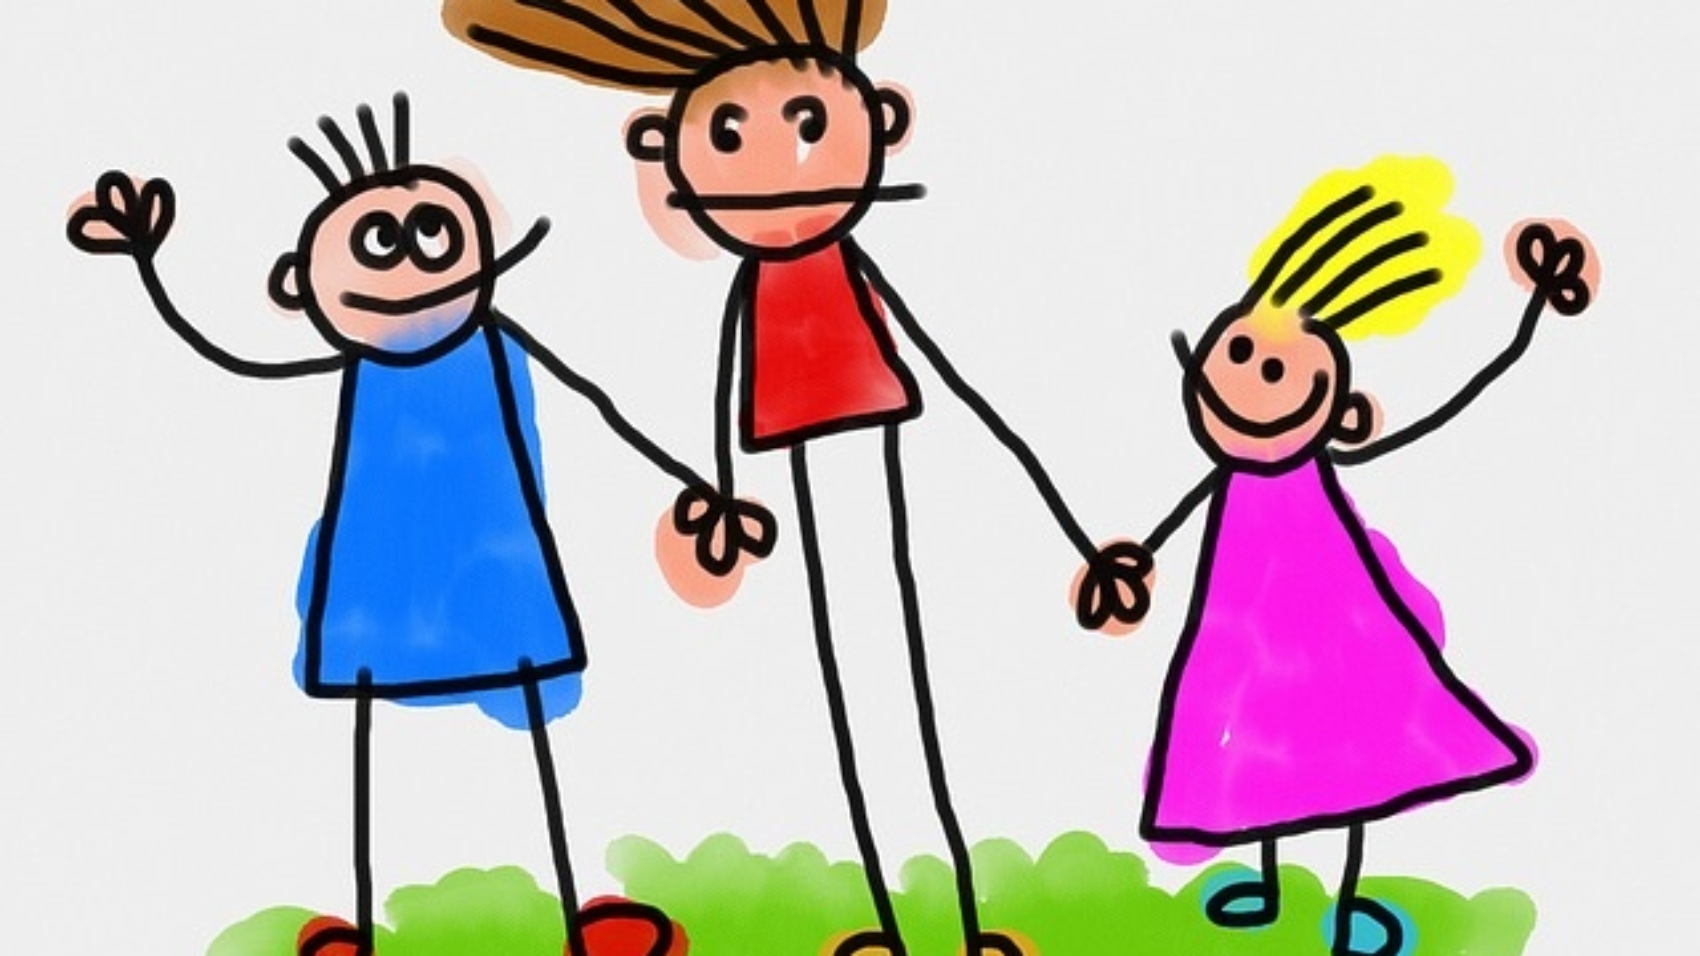 Cartoon kids holding hands